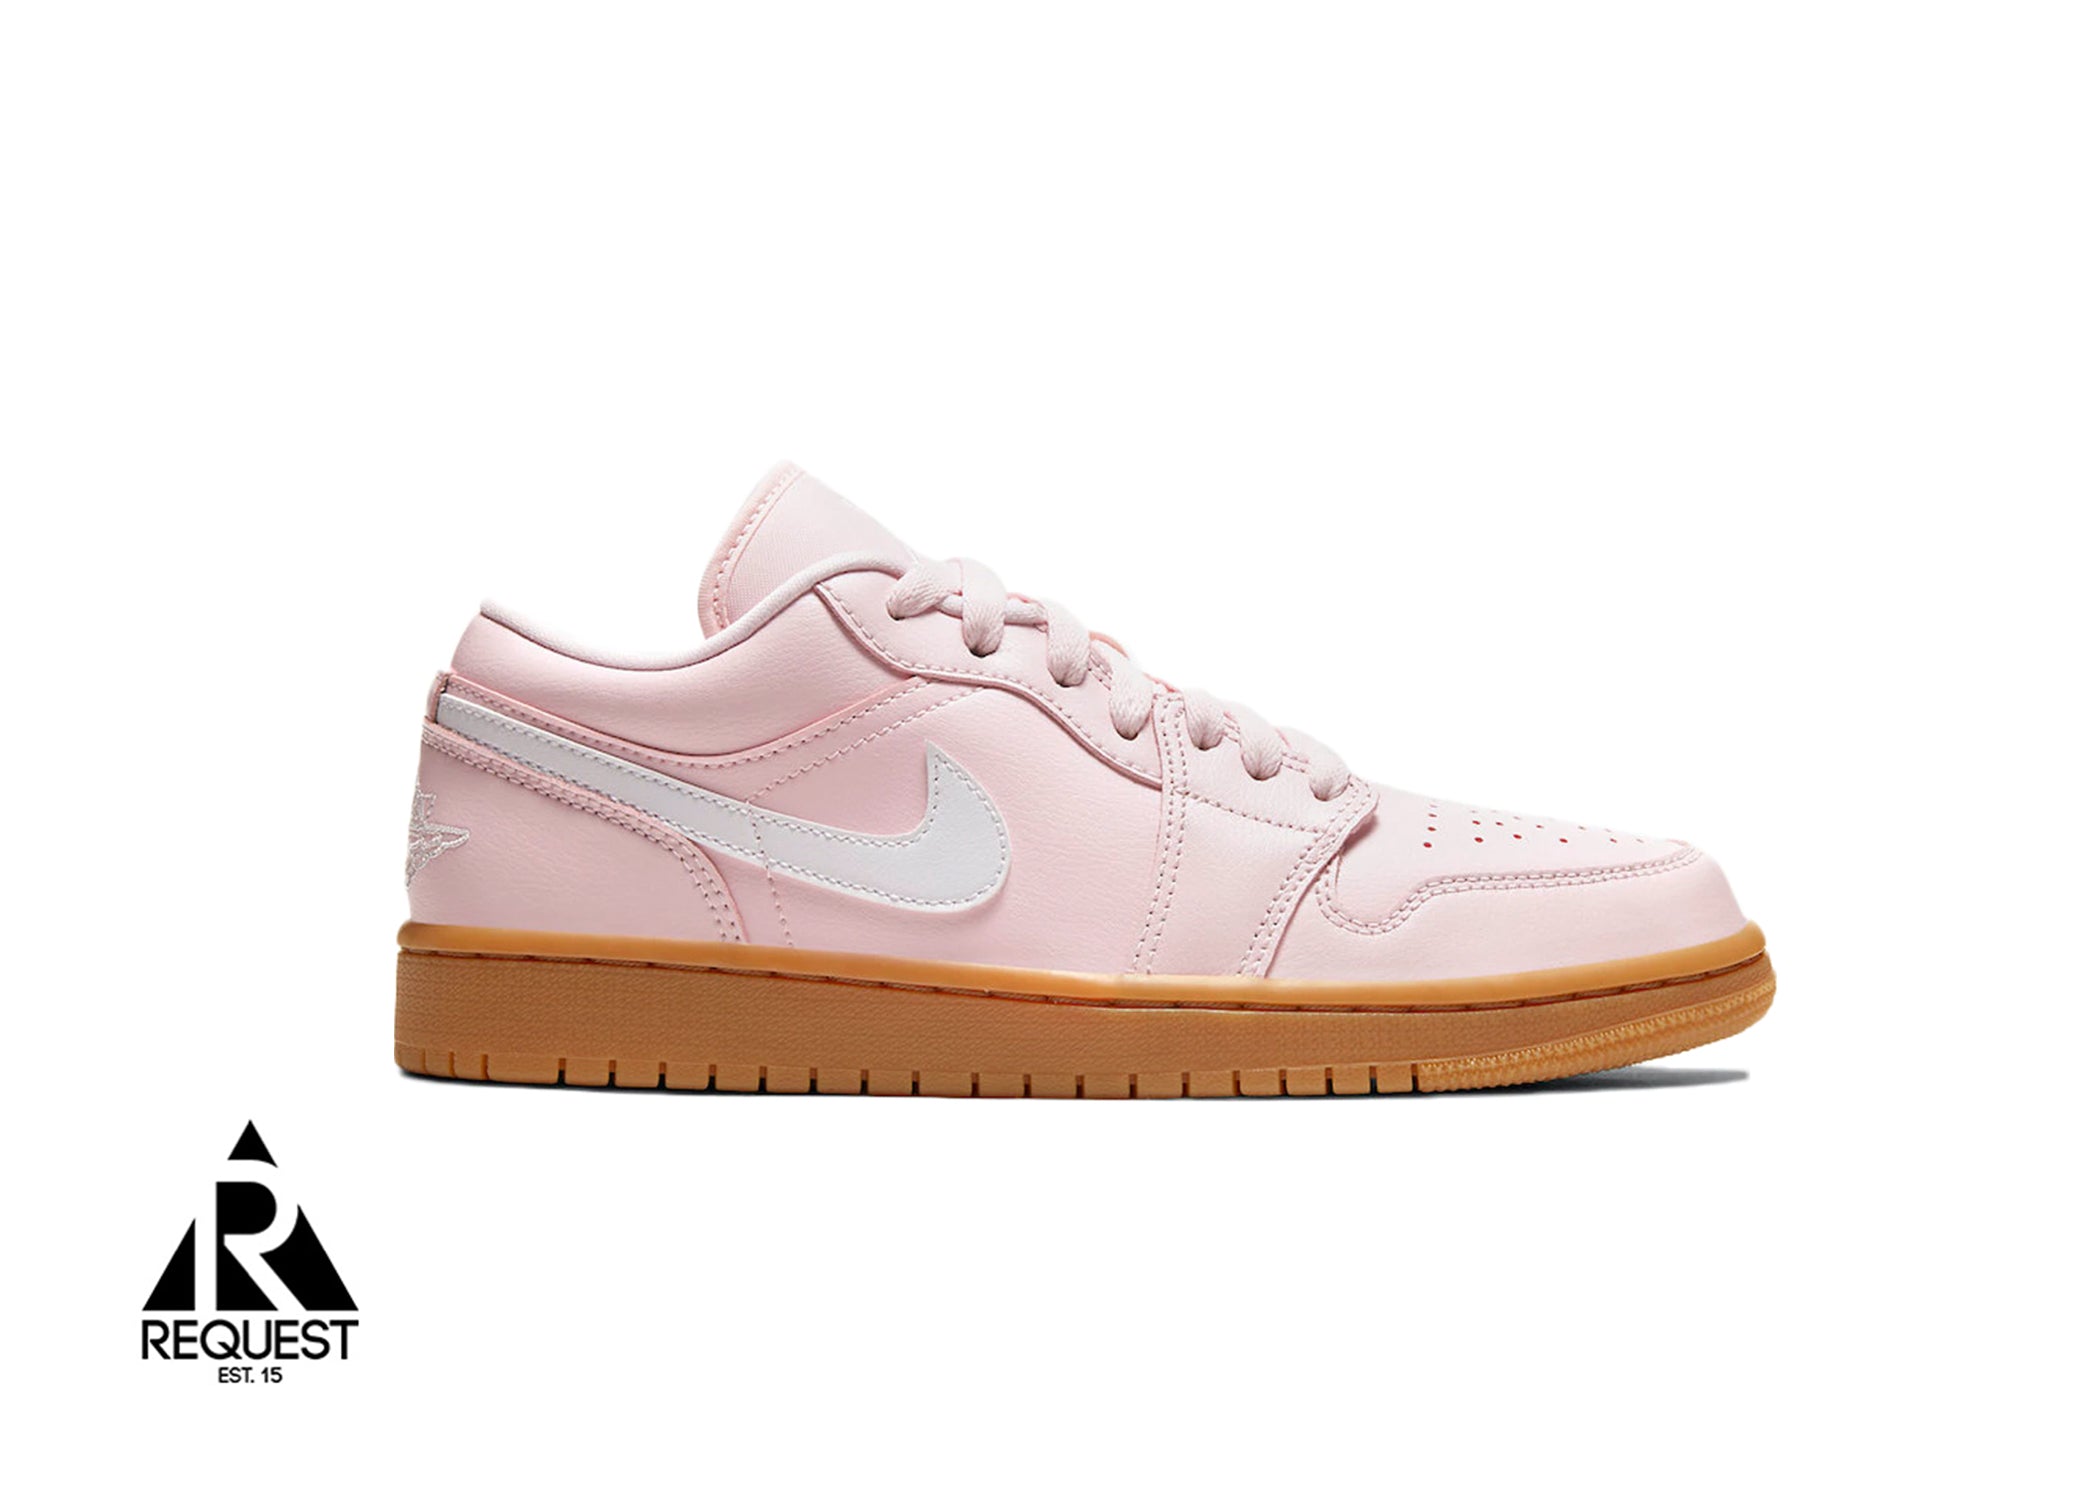 Air Jordan 1 Low “Arctic Pink Gum”